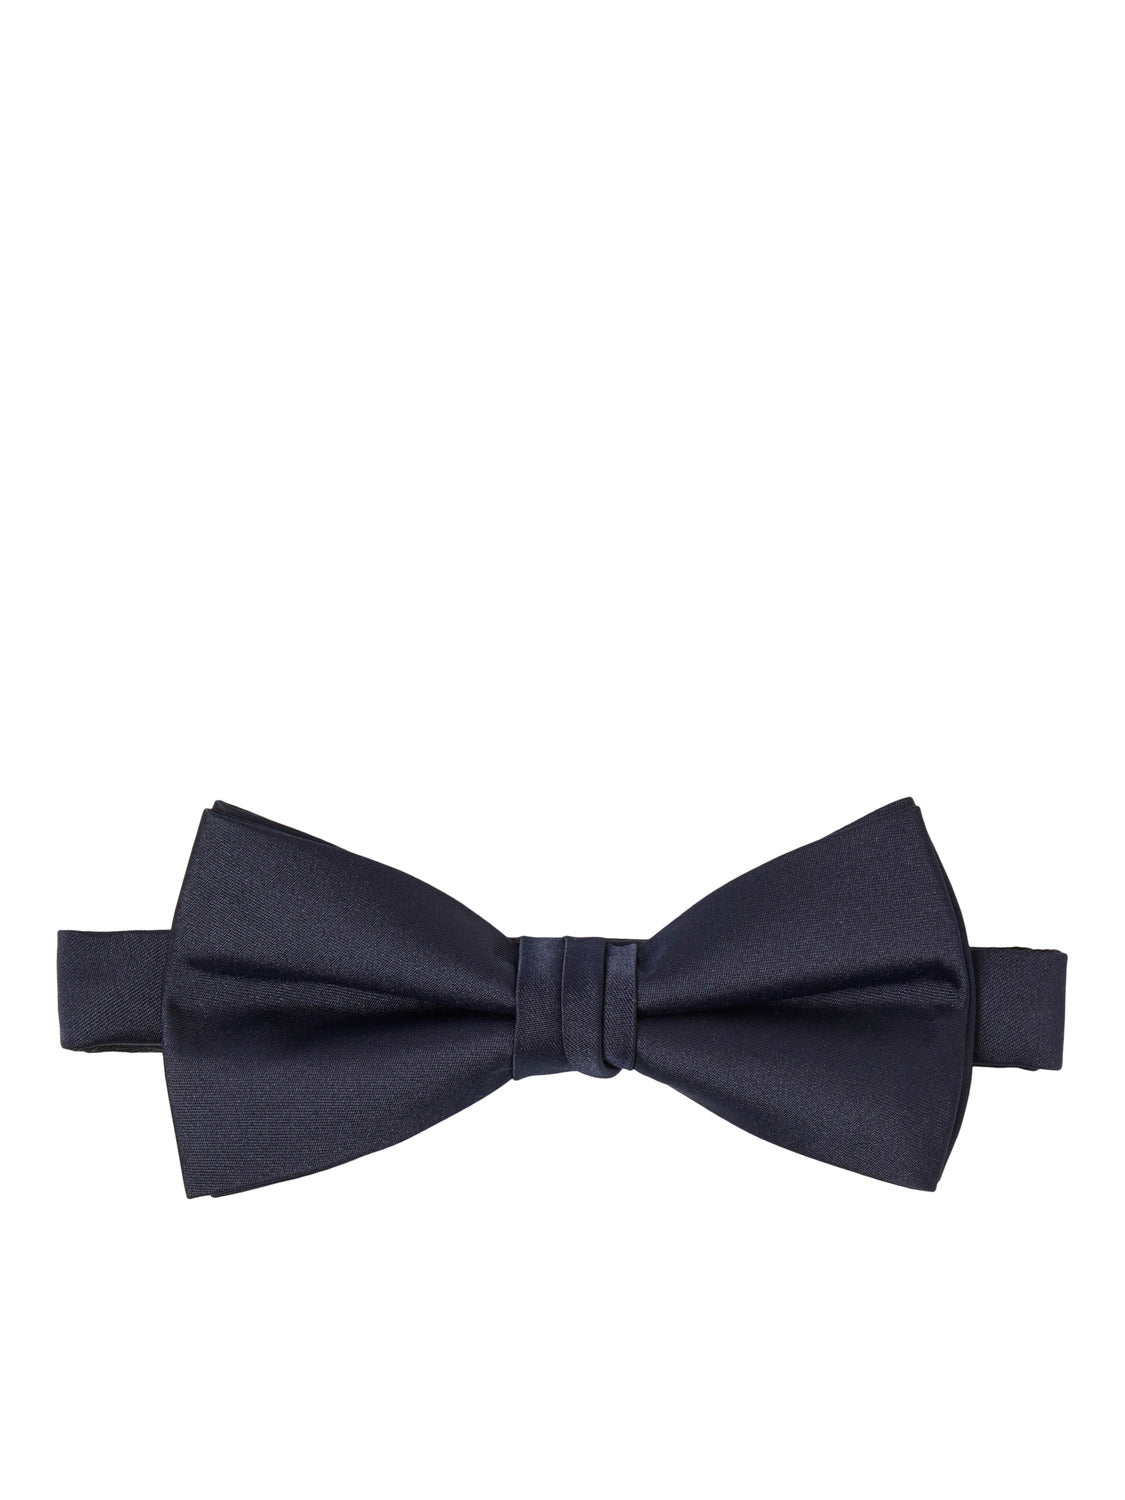 JACSOLID Bow Tie - Navy Blazer